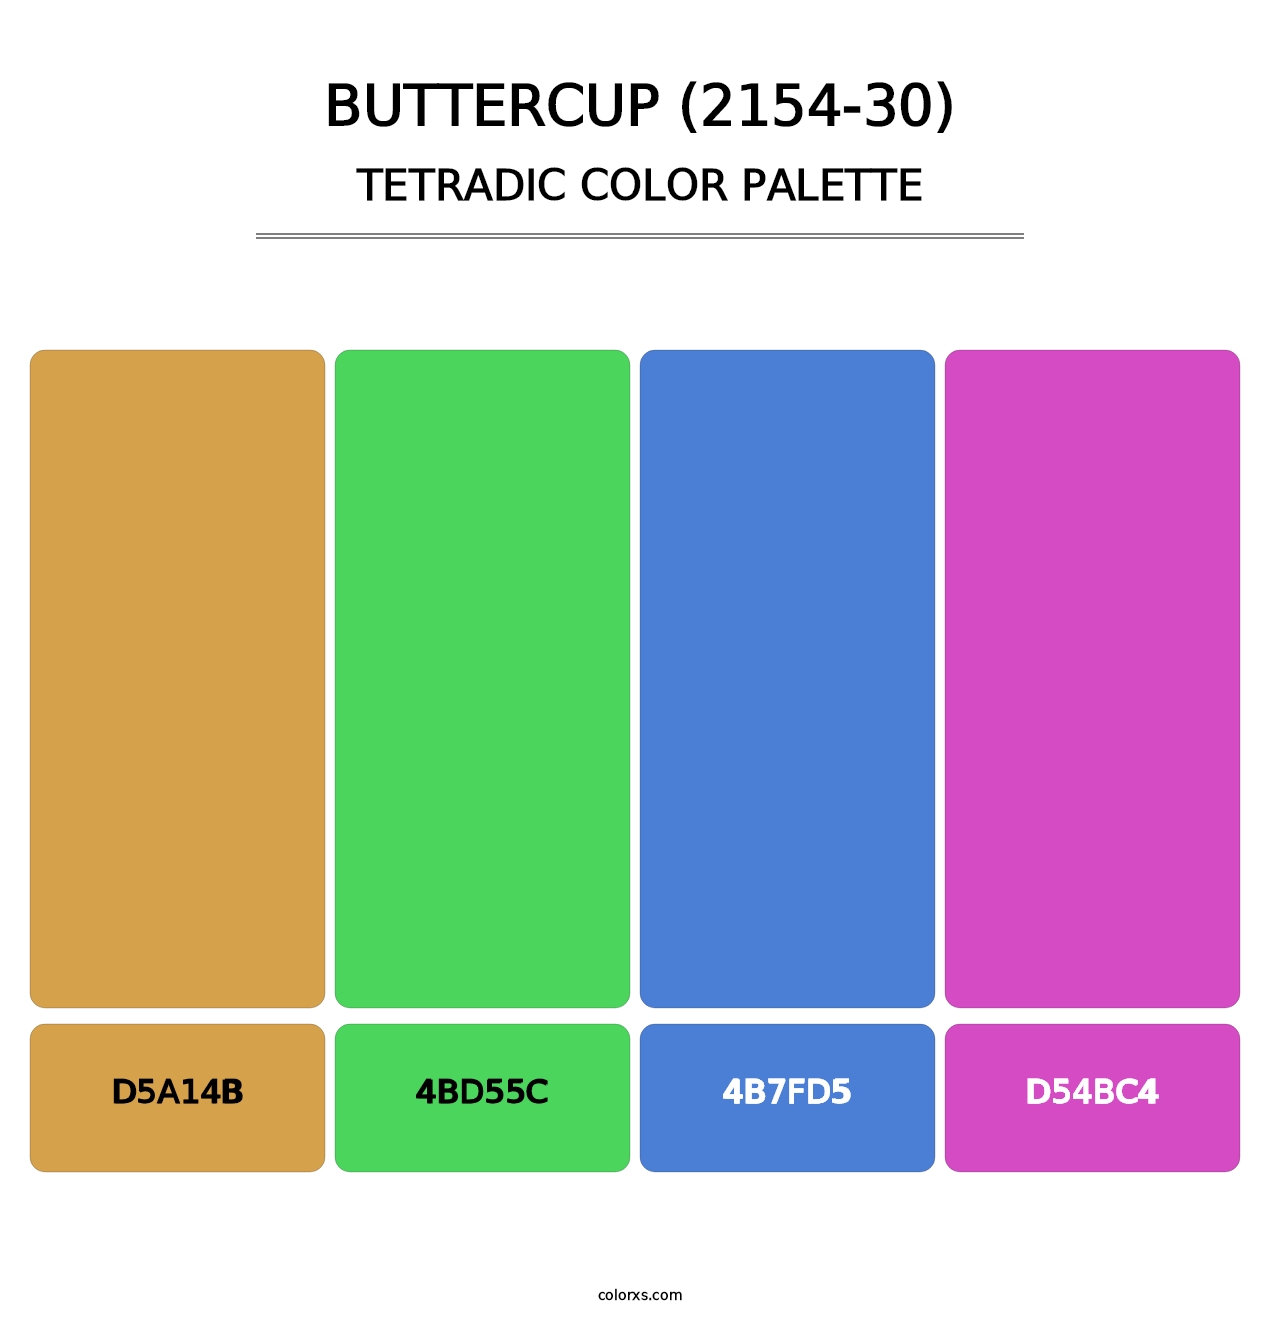 Buttercup (2154-30) - Tetradic Color Palette